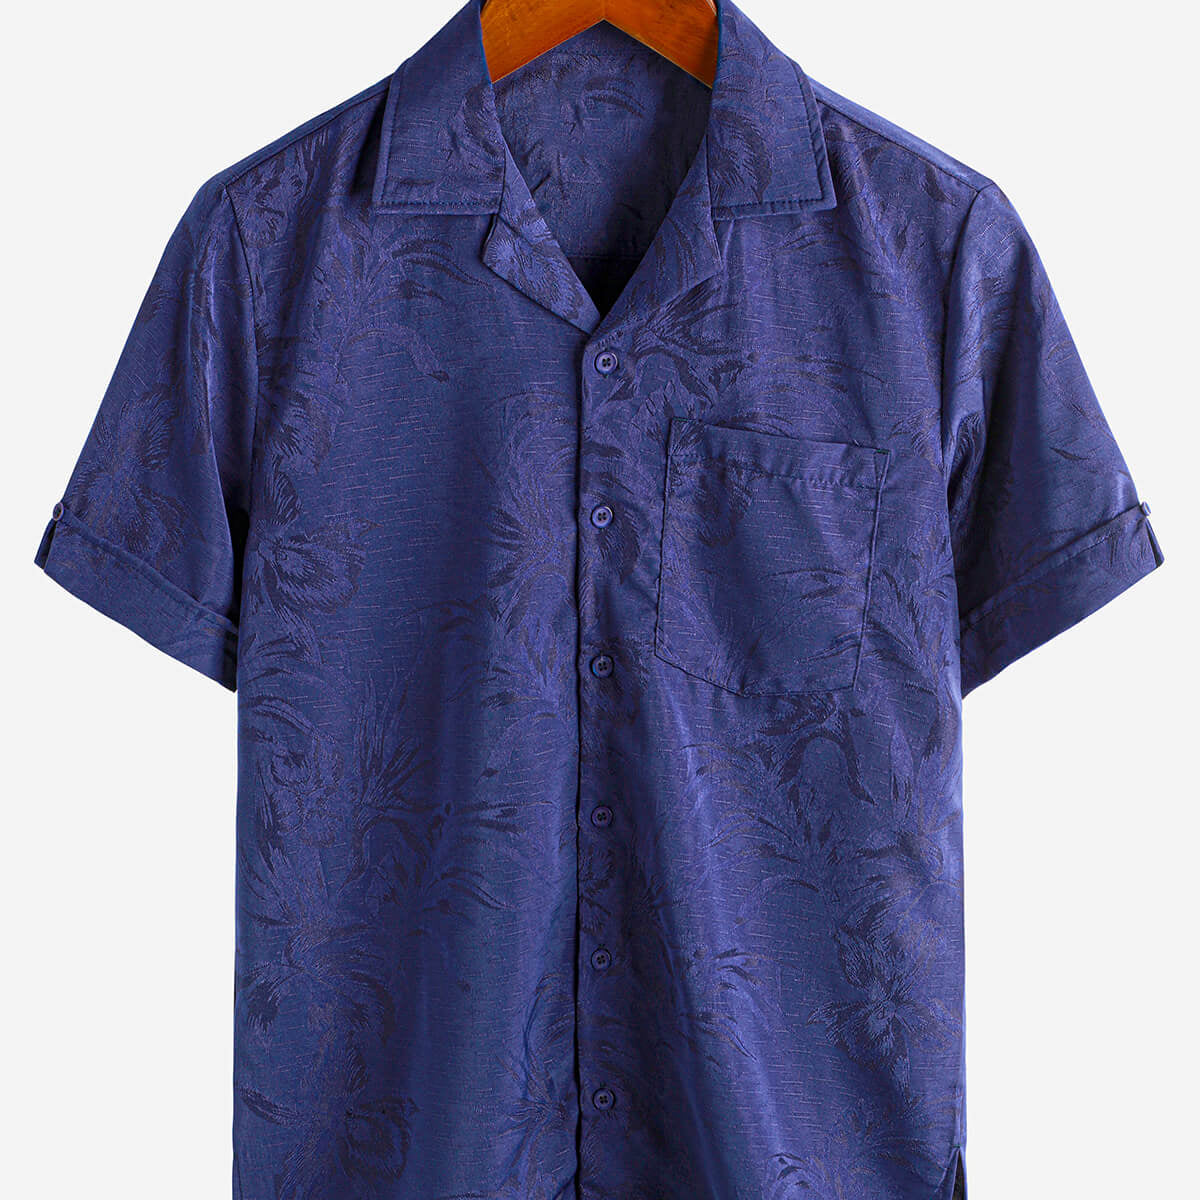 Homme Hawaiian Floral Pocket Jacquard Button Up Short Sleeve Summer Cuban Collar Camp Shirt